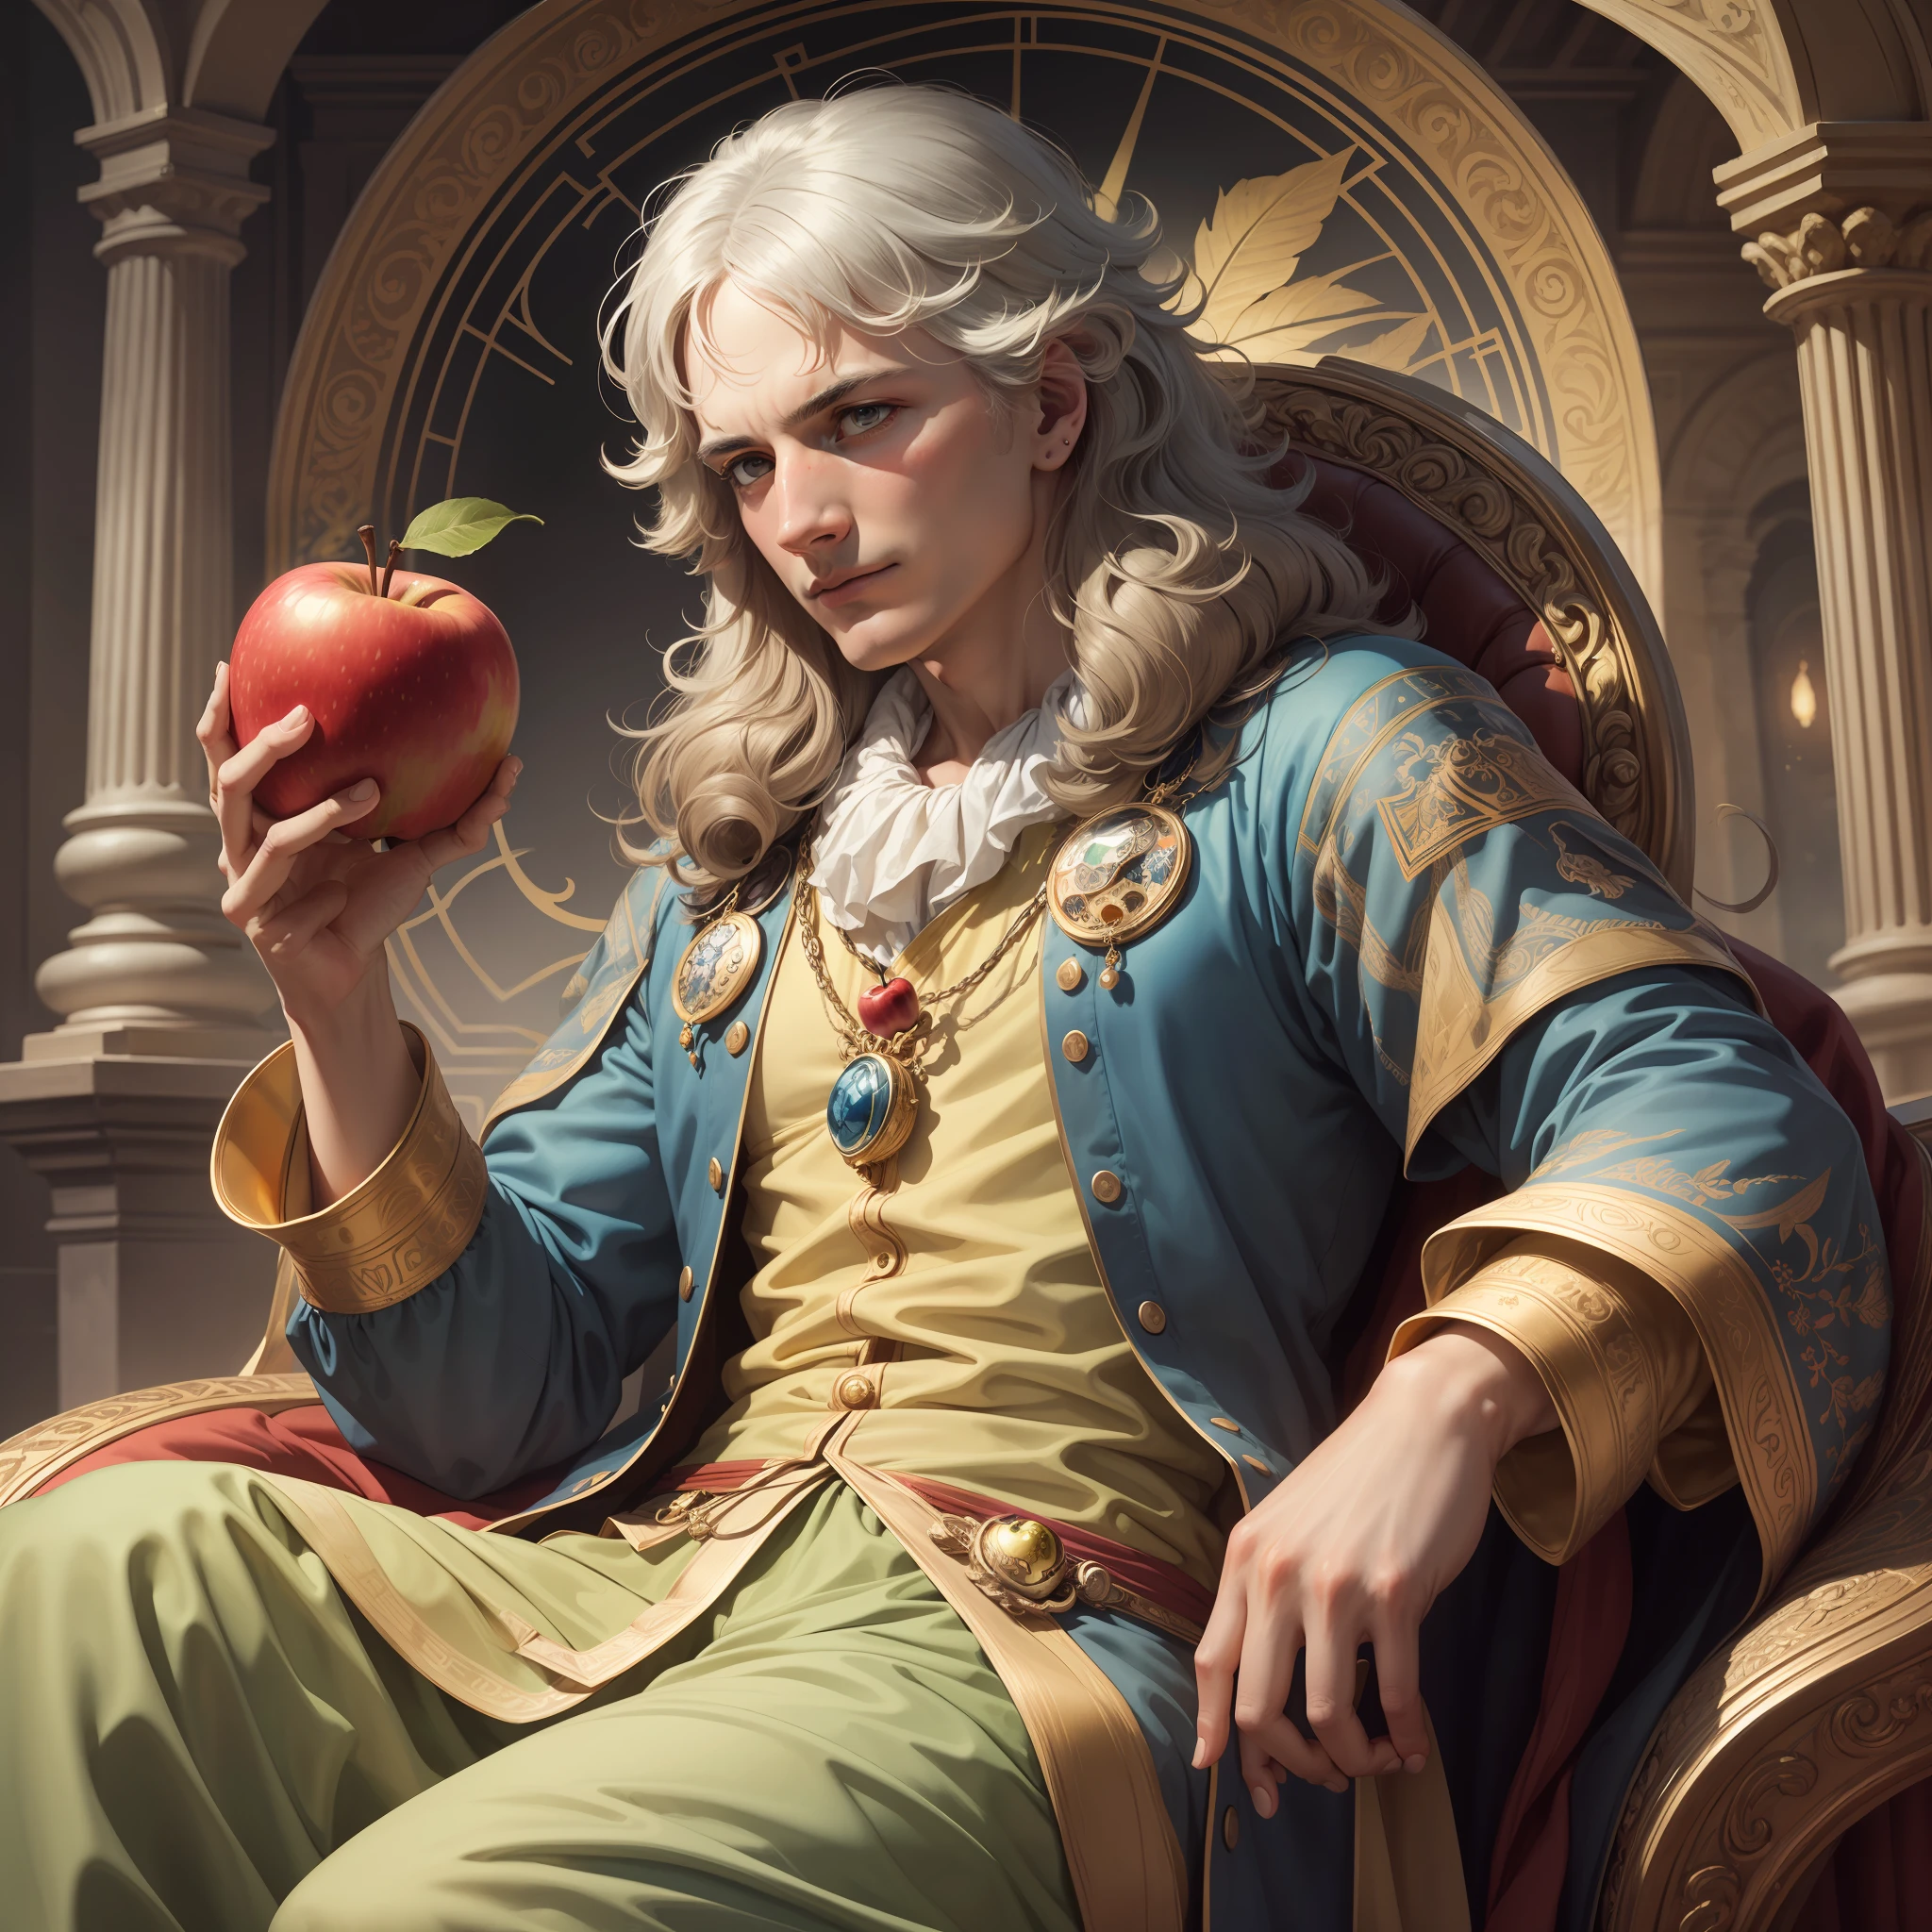 "위엄있는 왕처럼 사과를 들고 있는 아이작 뉴턴의 모습을 매우 세밀하고 아름다운 일러스트로 표현하였습니다., 완벽한 색상의 그라데이션으로 왕좌에 앉아."